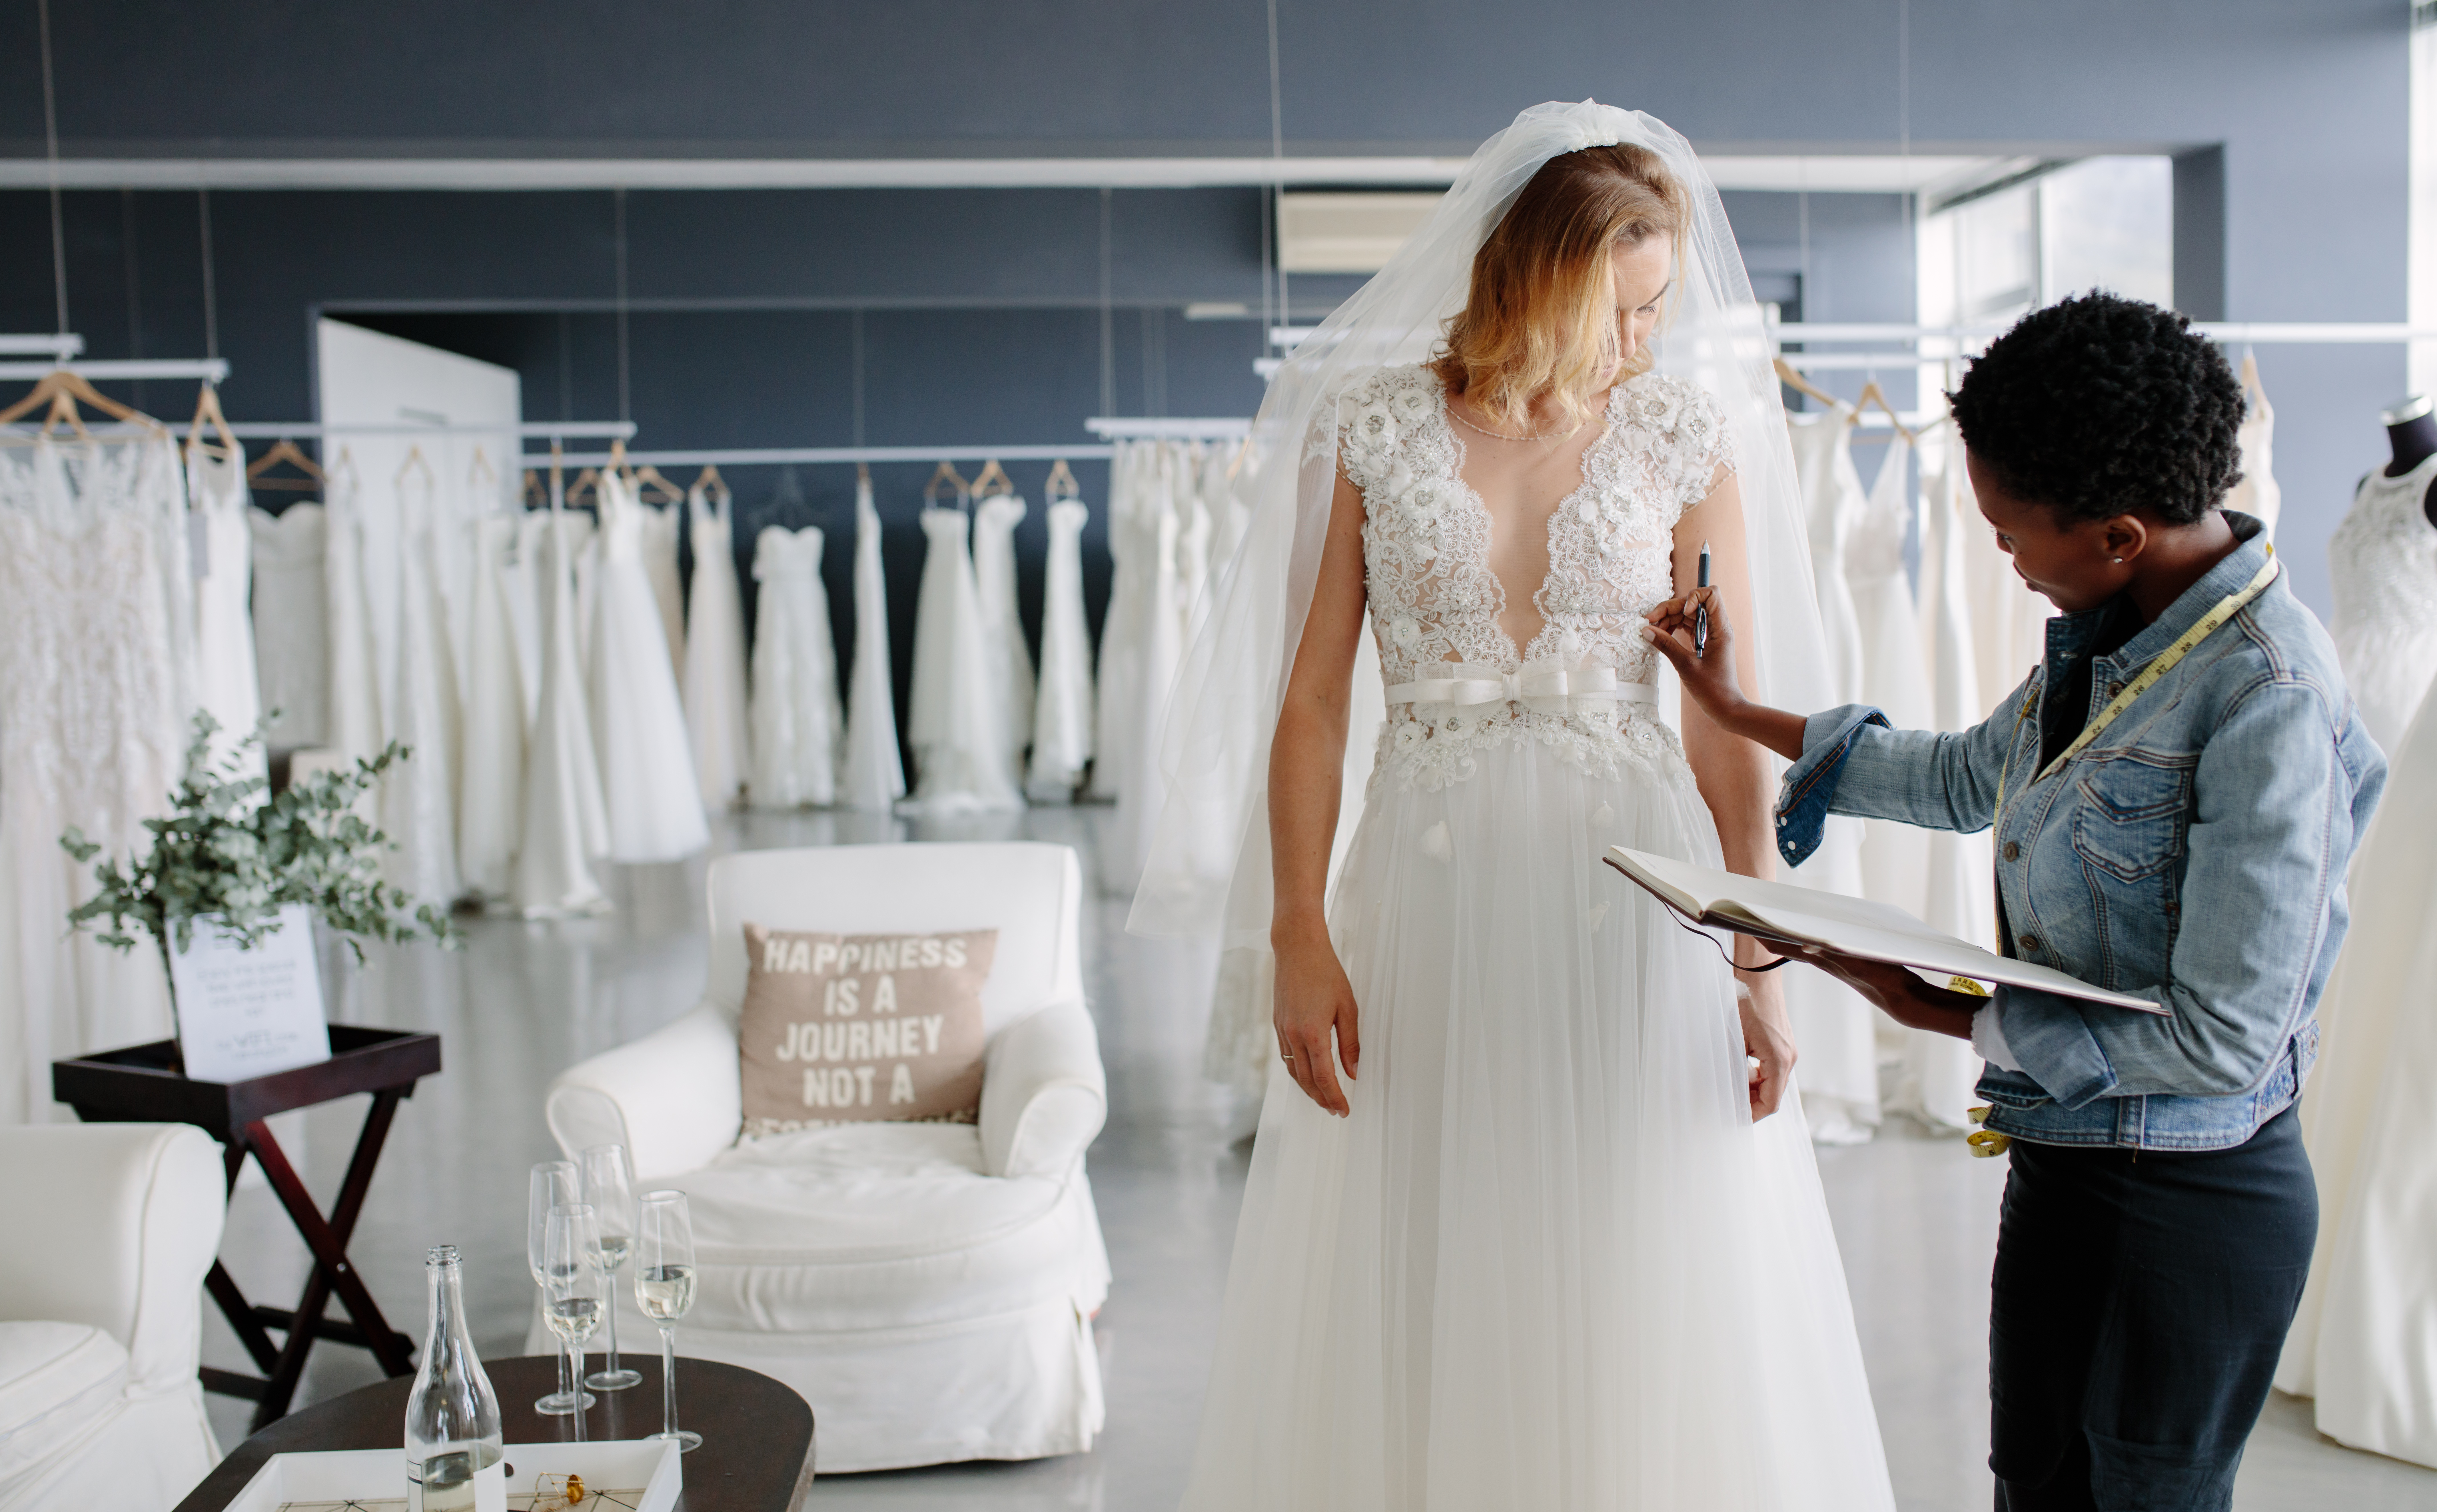 Eine Braut mit und eine Brauthelferin | Quelle: Shutterstock